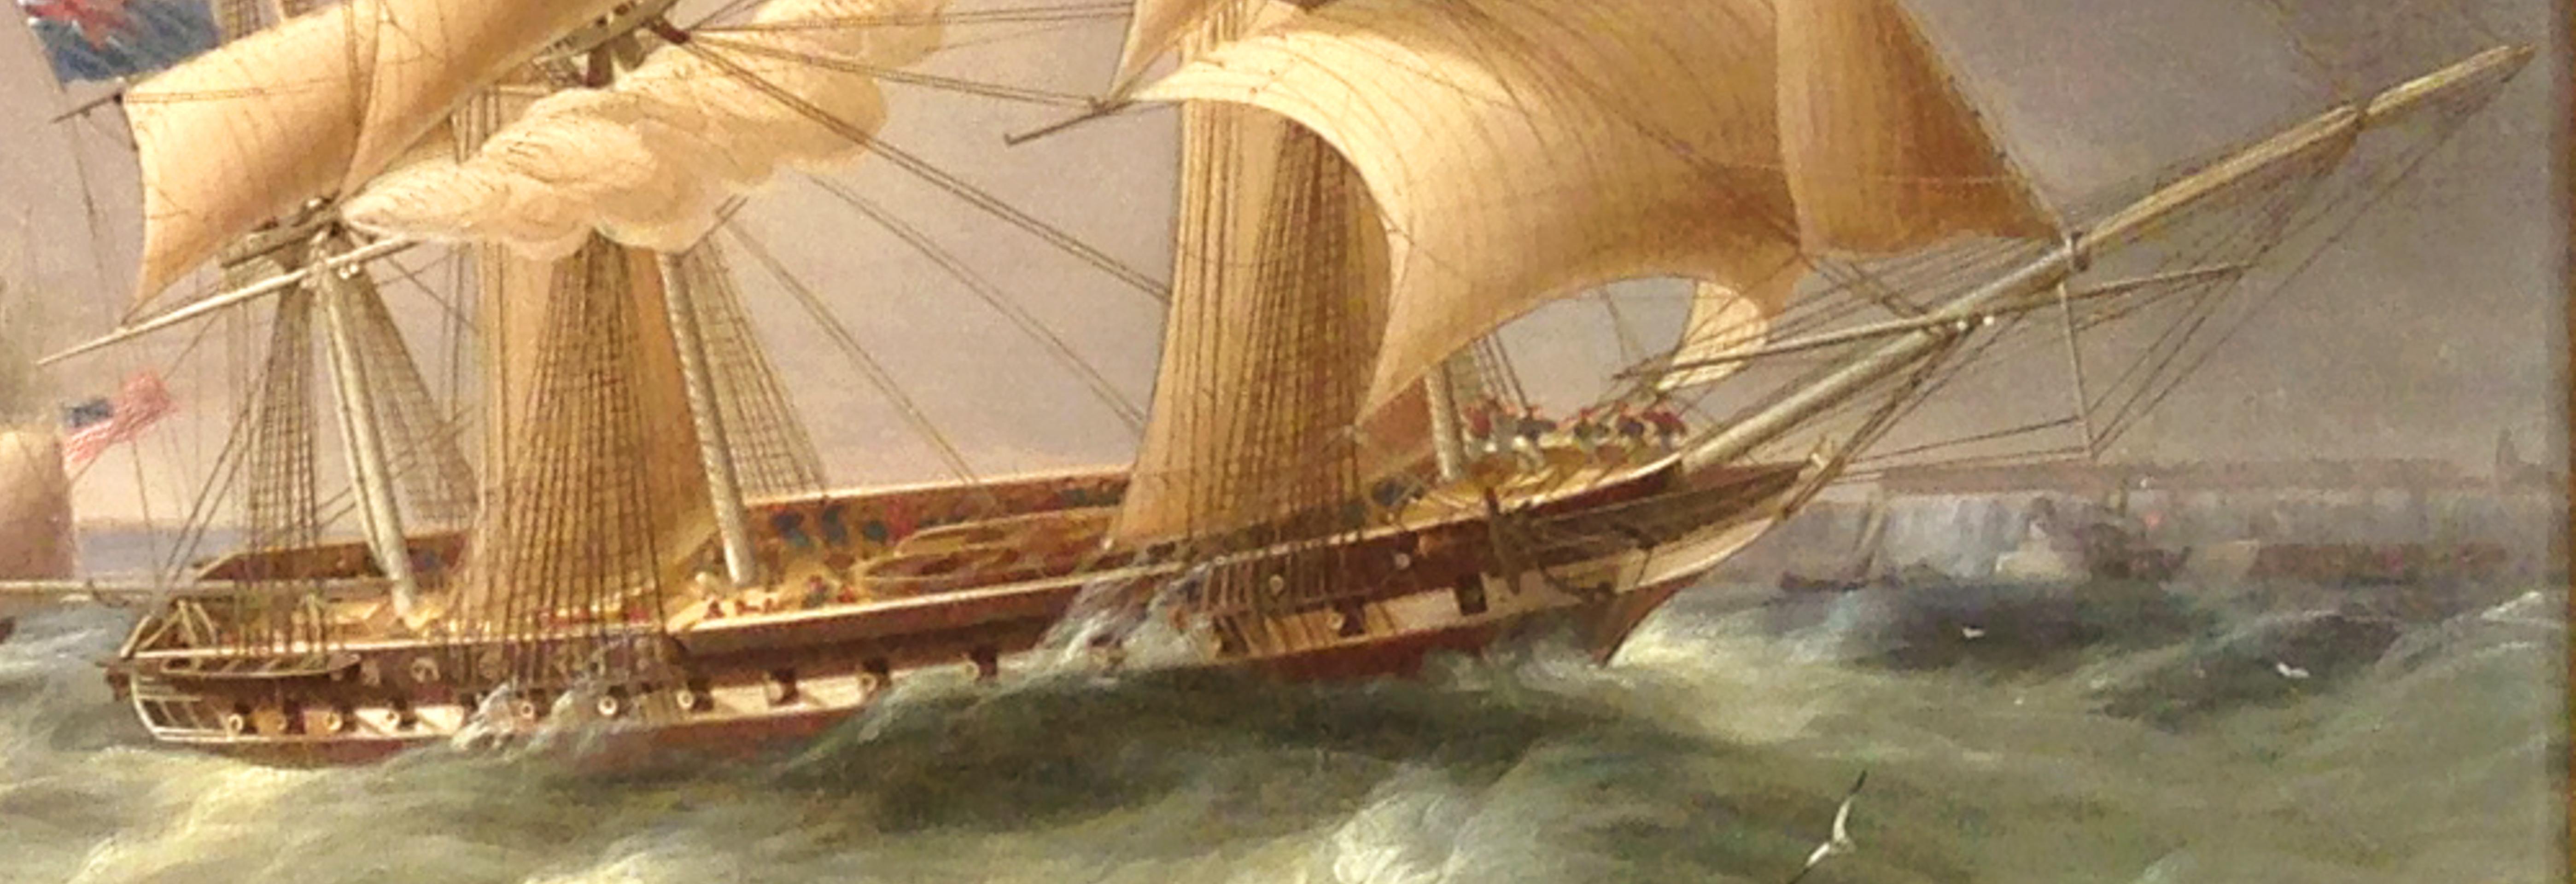 frigate vs schooner